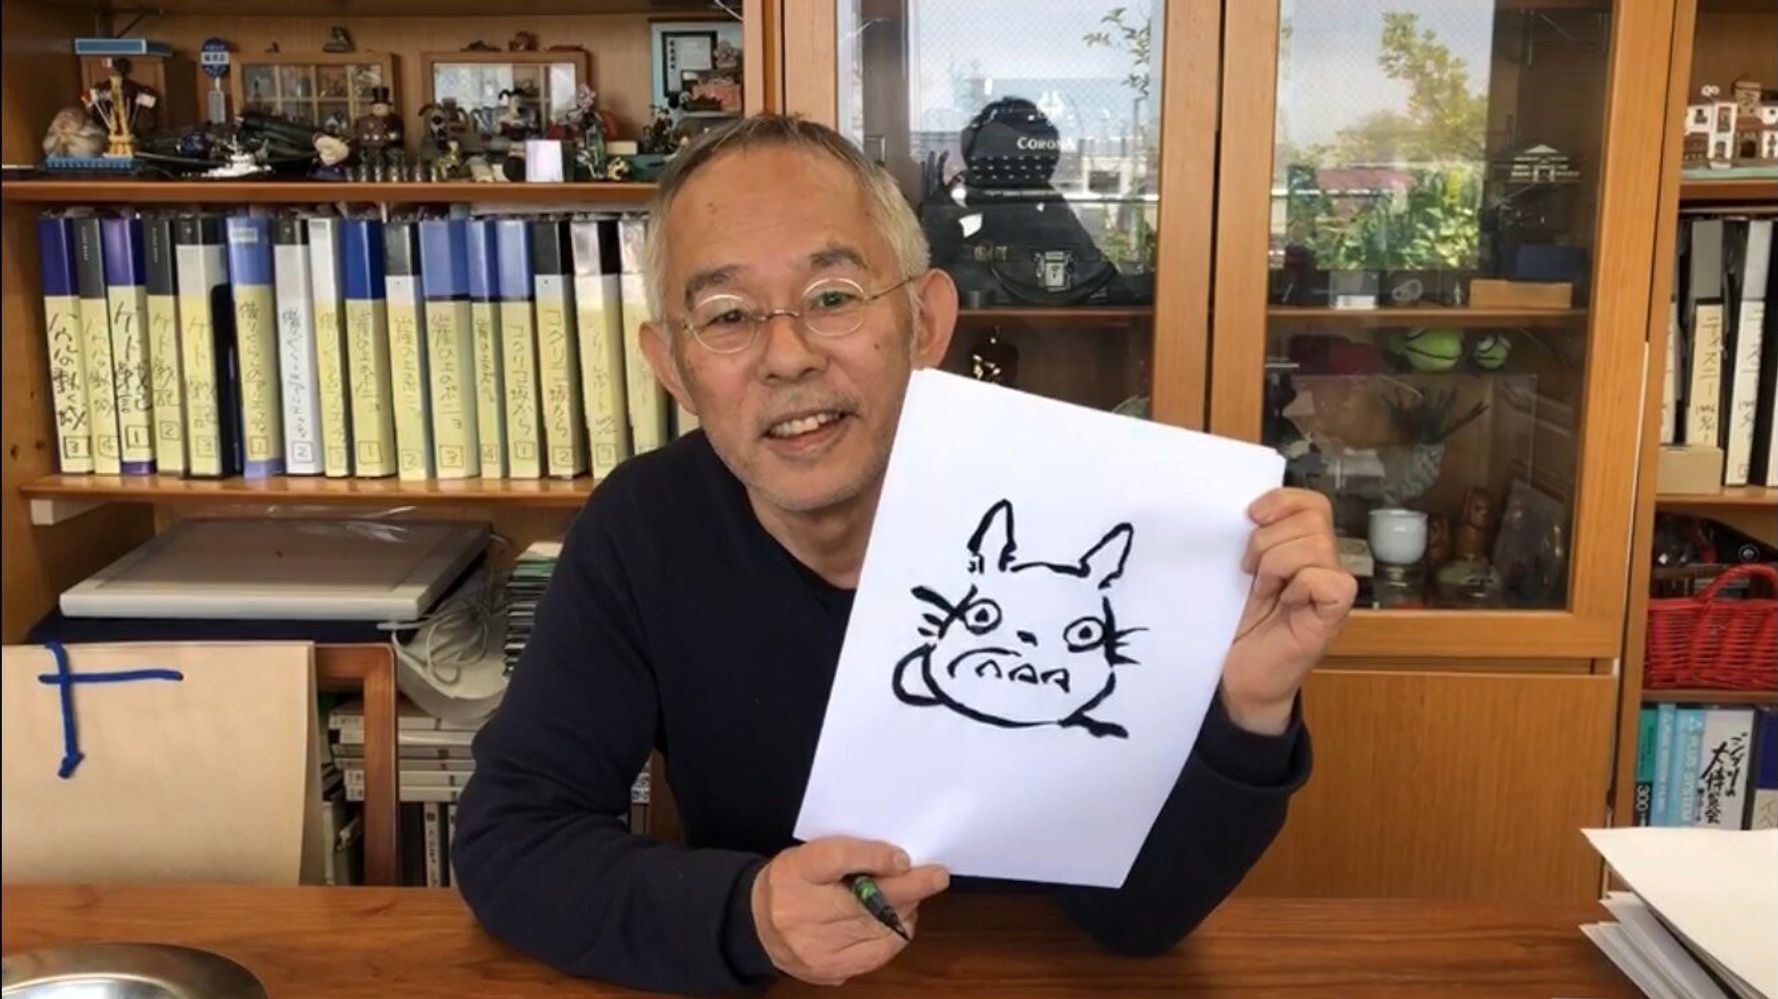 ジブリ 鈴木敏夫さん トトロの描き方をレクチャー おうちでトトロを描いちゃおう 動画 ハフポスト News